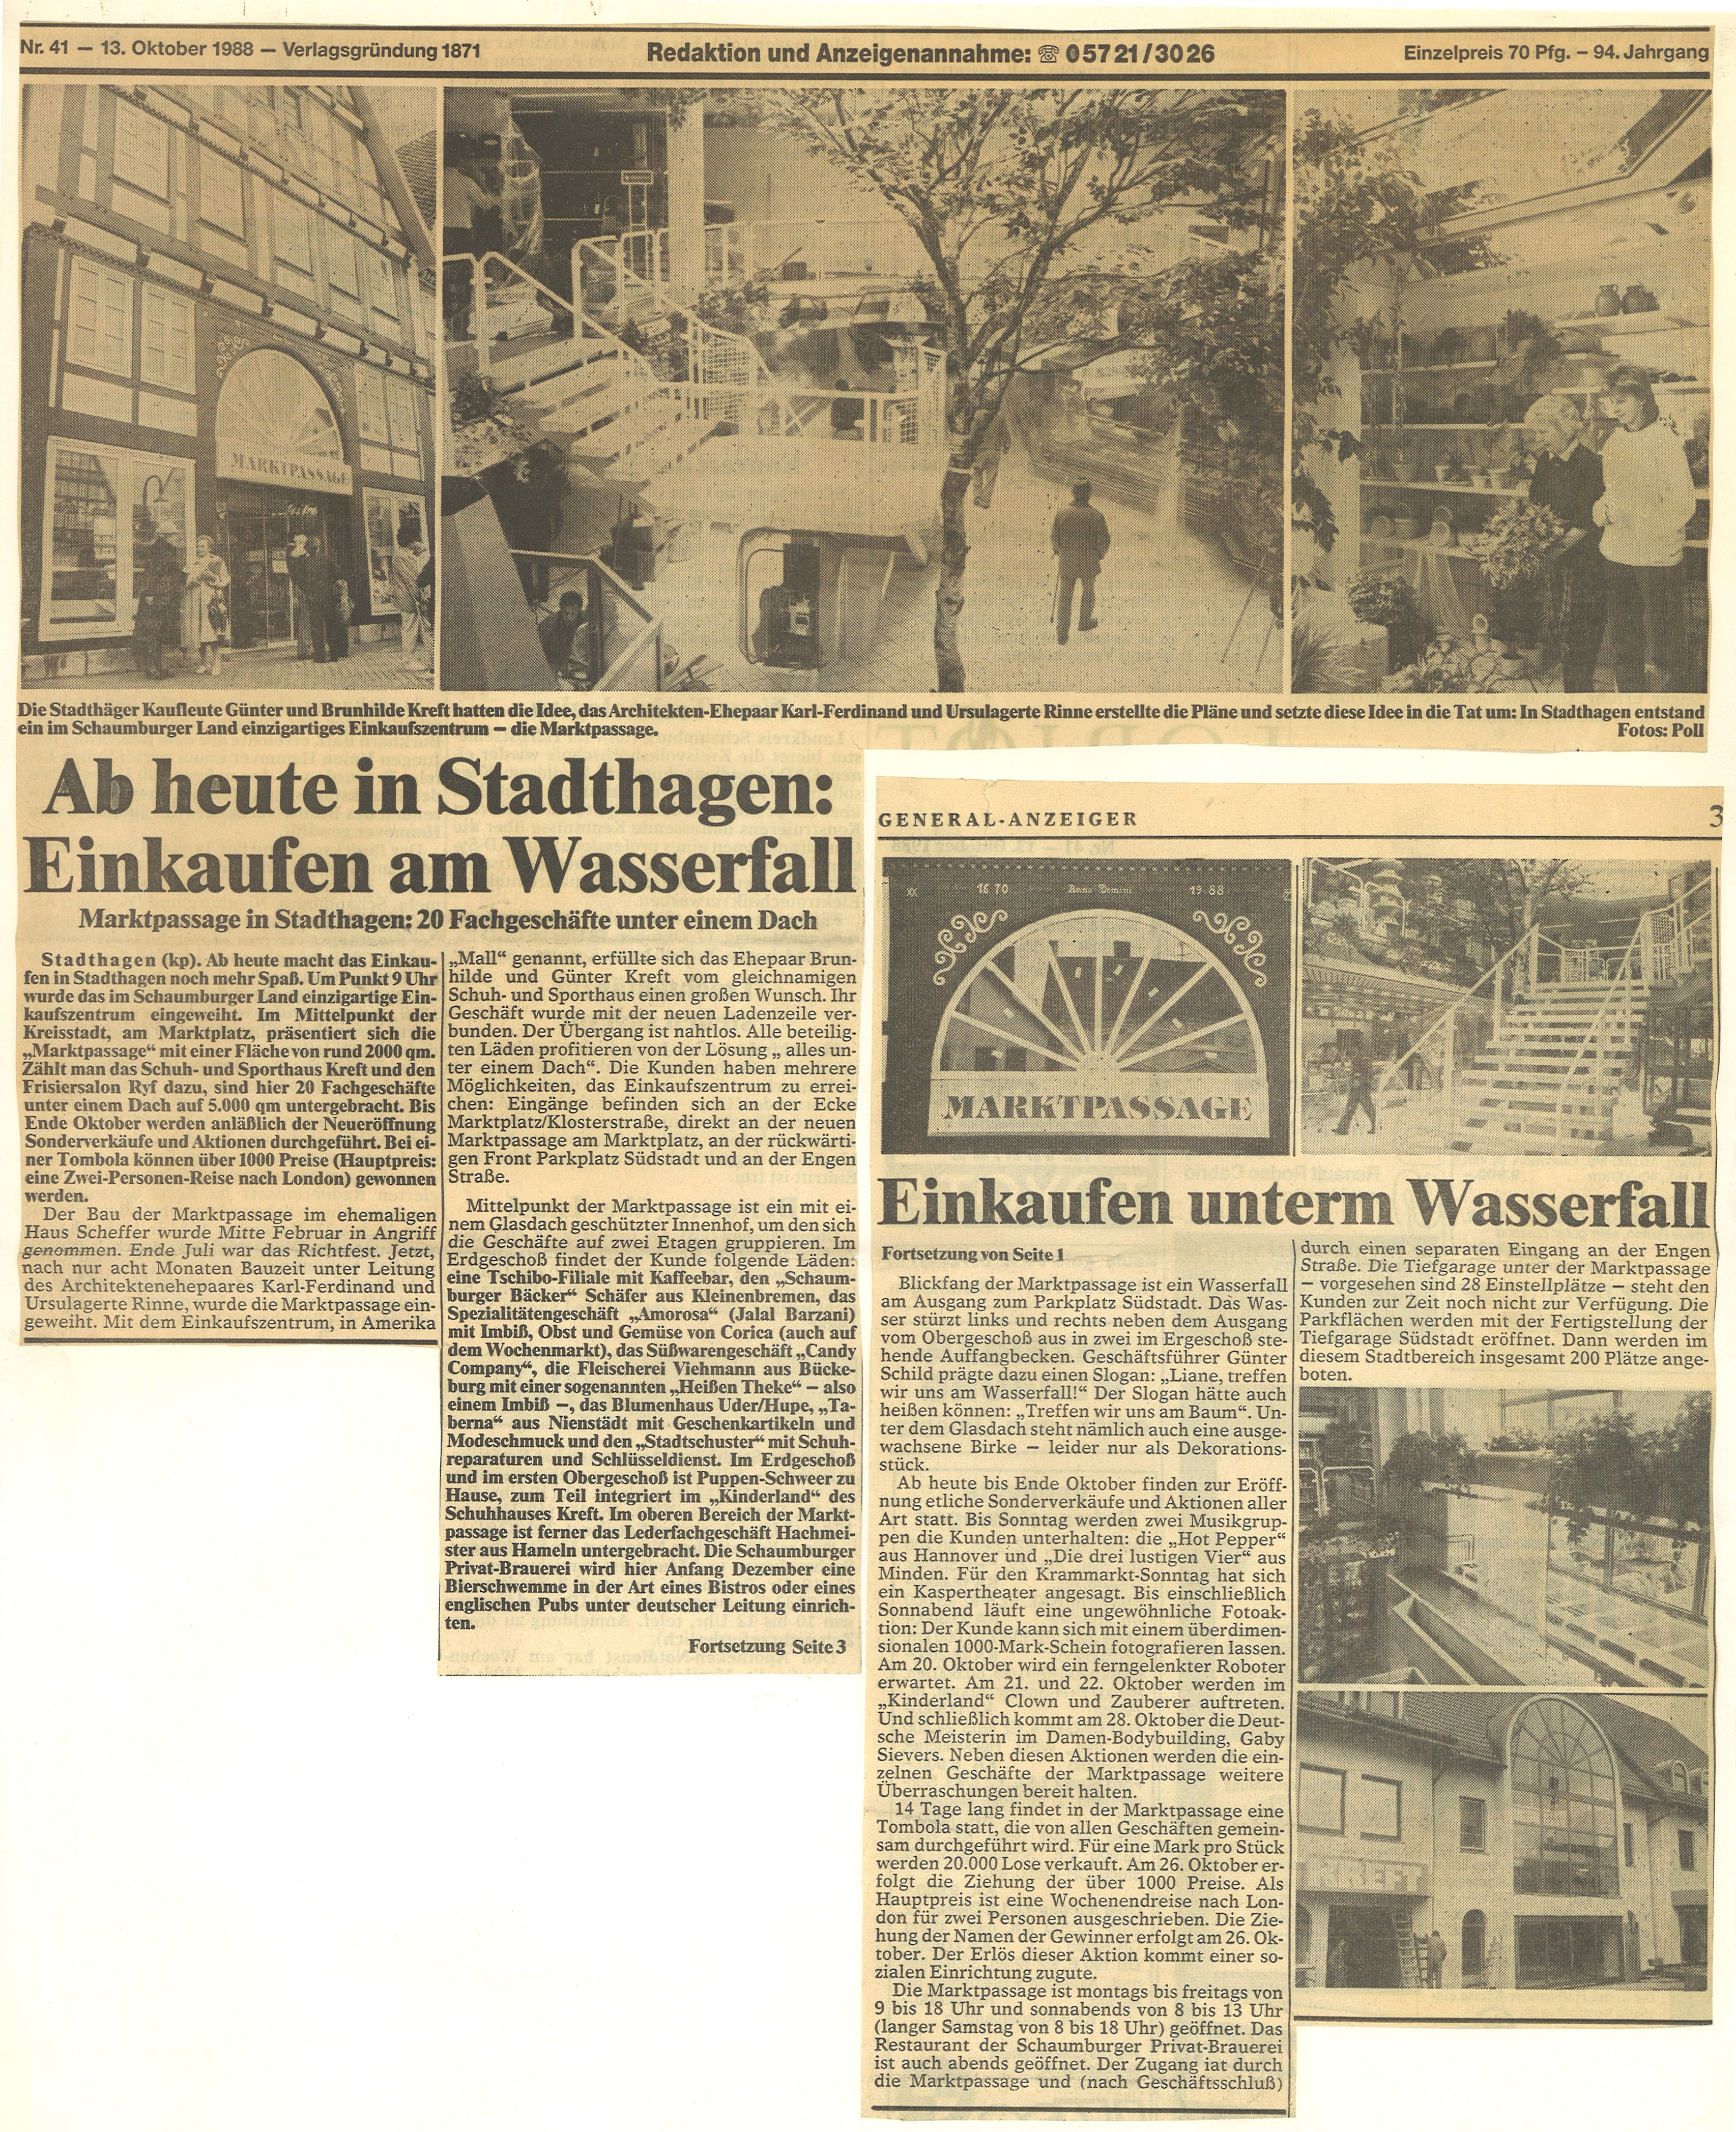 General-Anzeiger-1988-Oktober-13-Einkaufen-unterm-Wasserfall